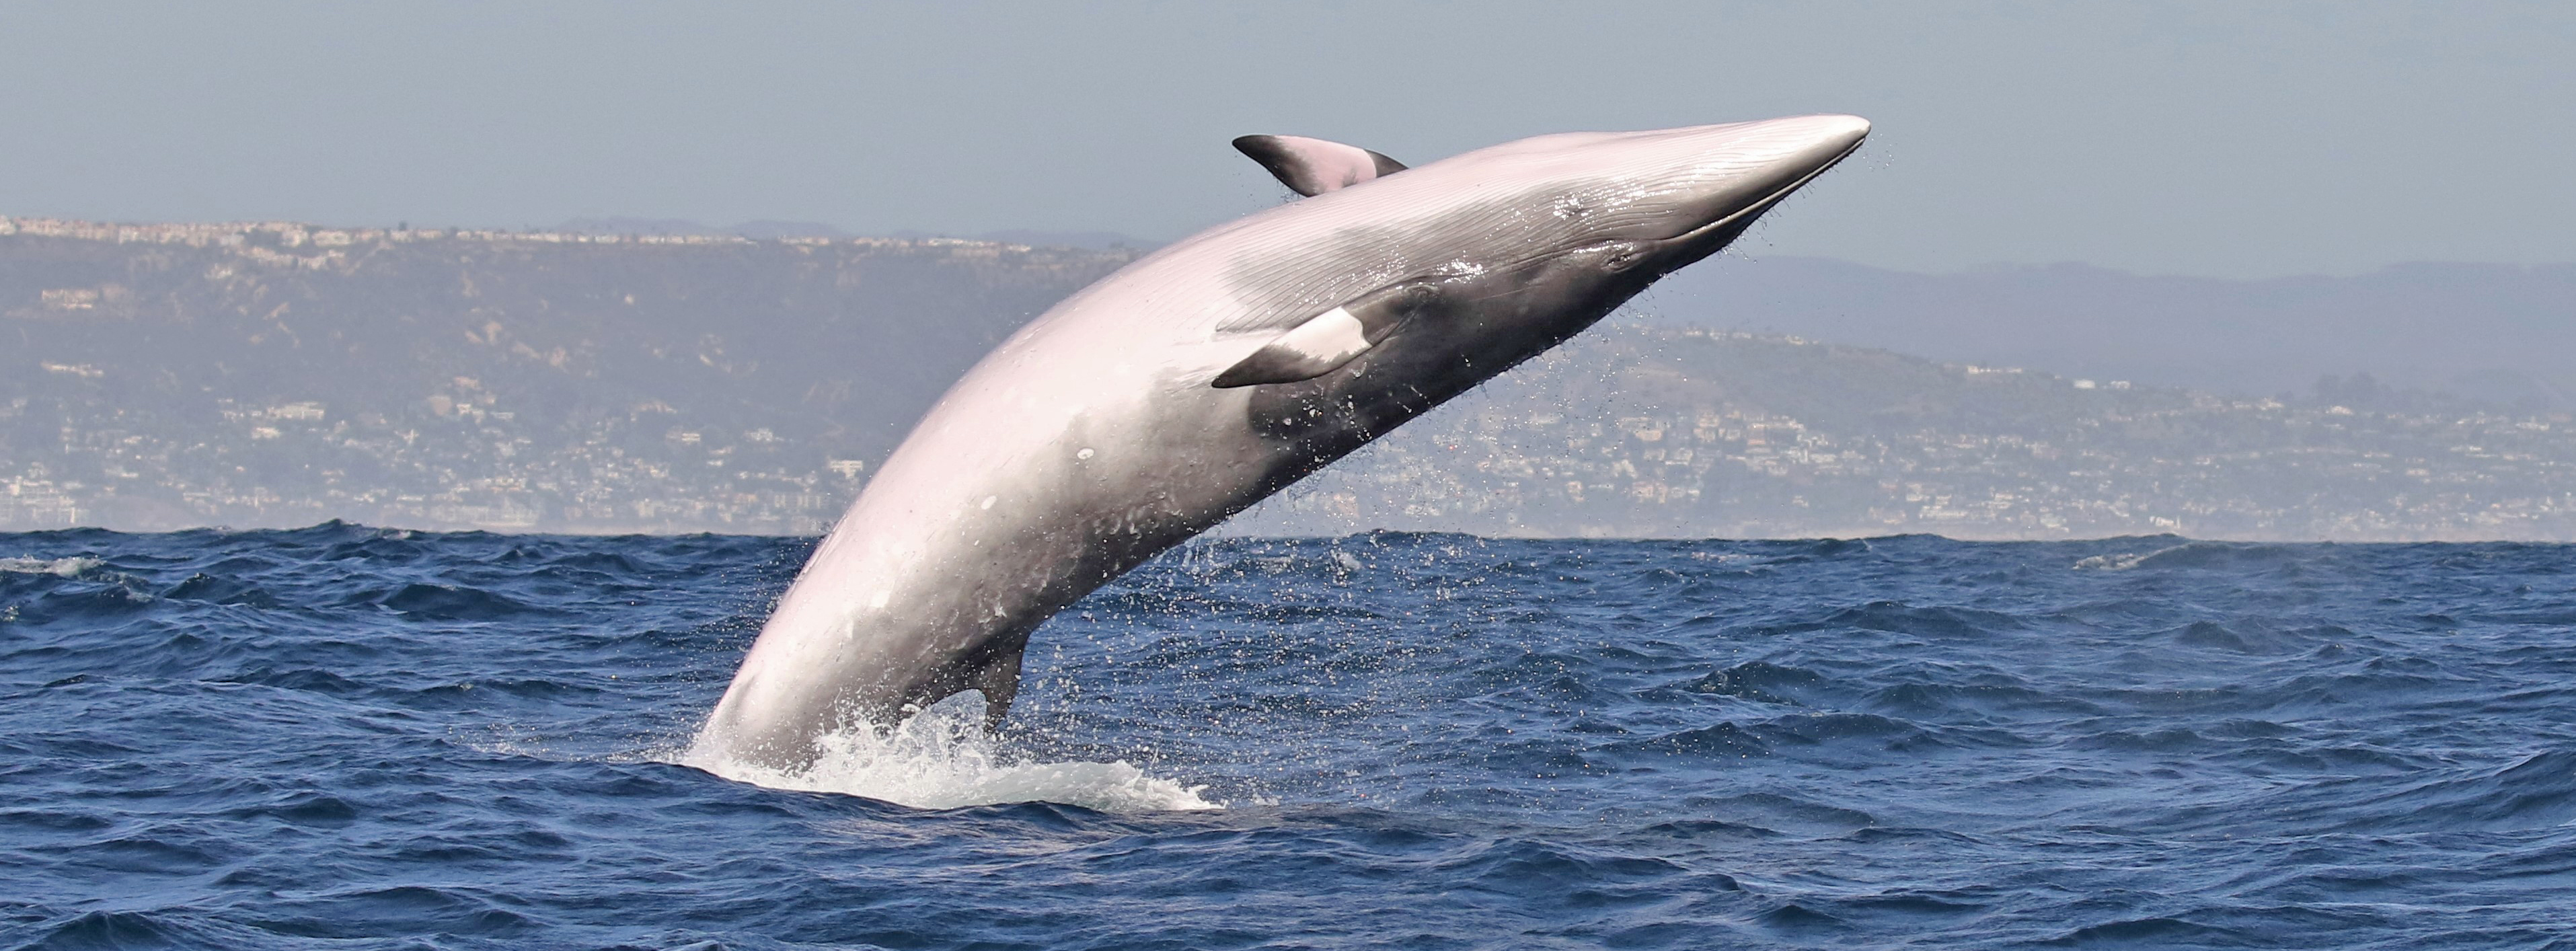 Southern-California-minke-whale